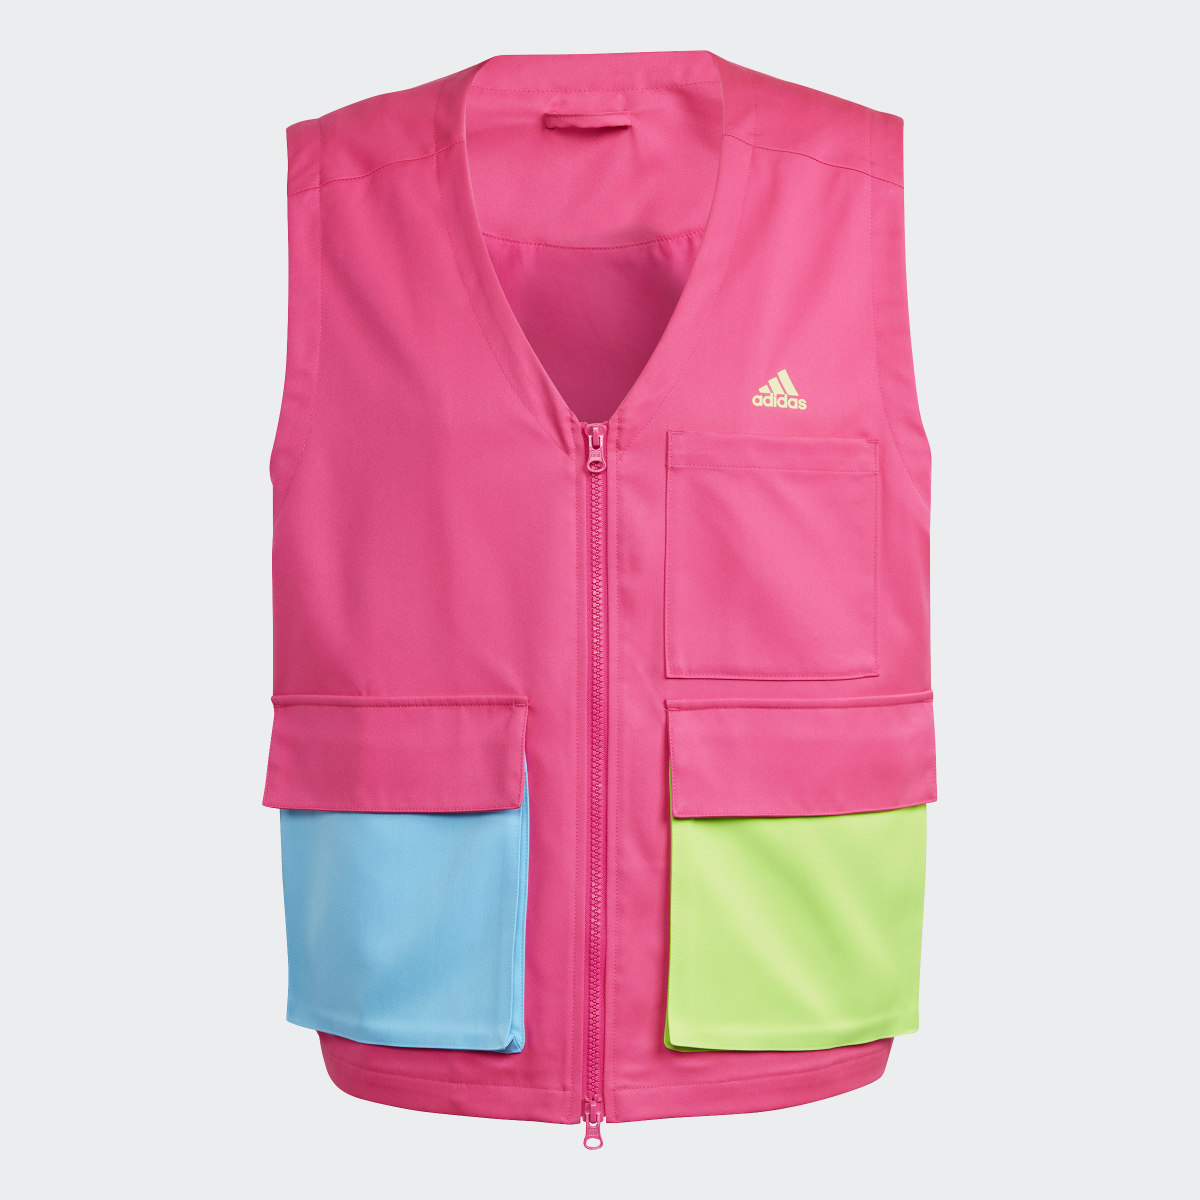 Adidas Kidcore Utility Vest. 5